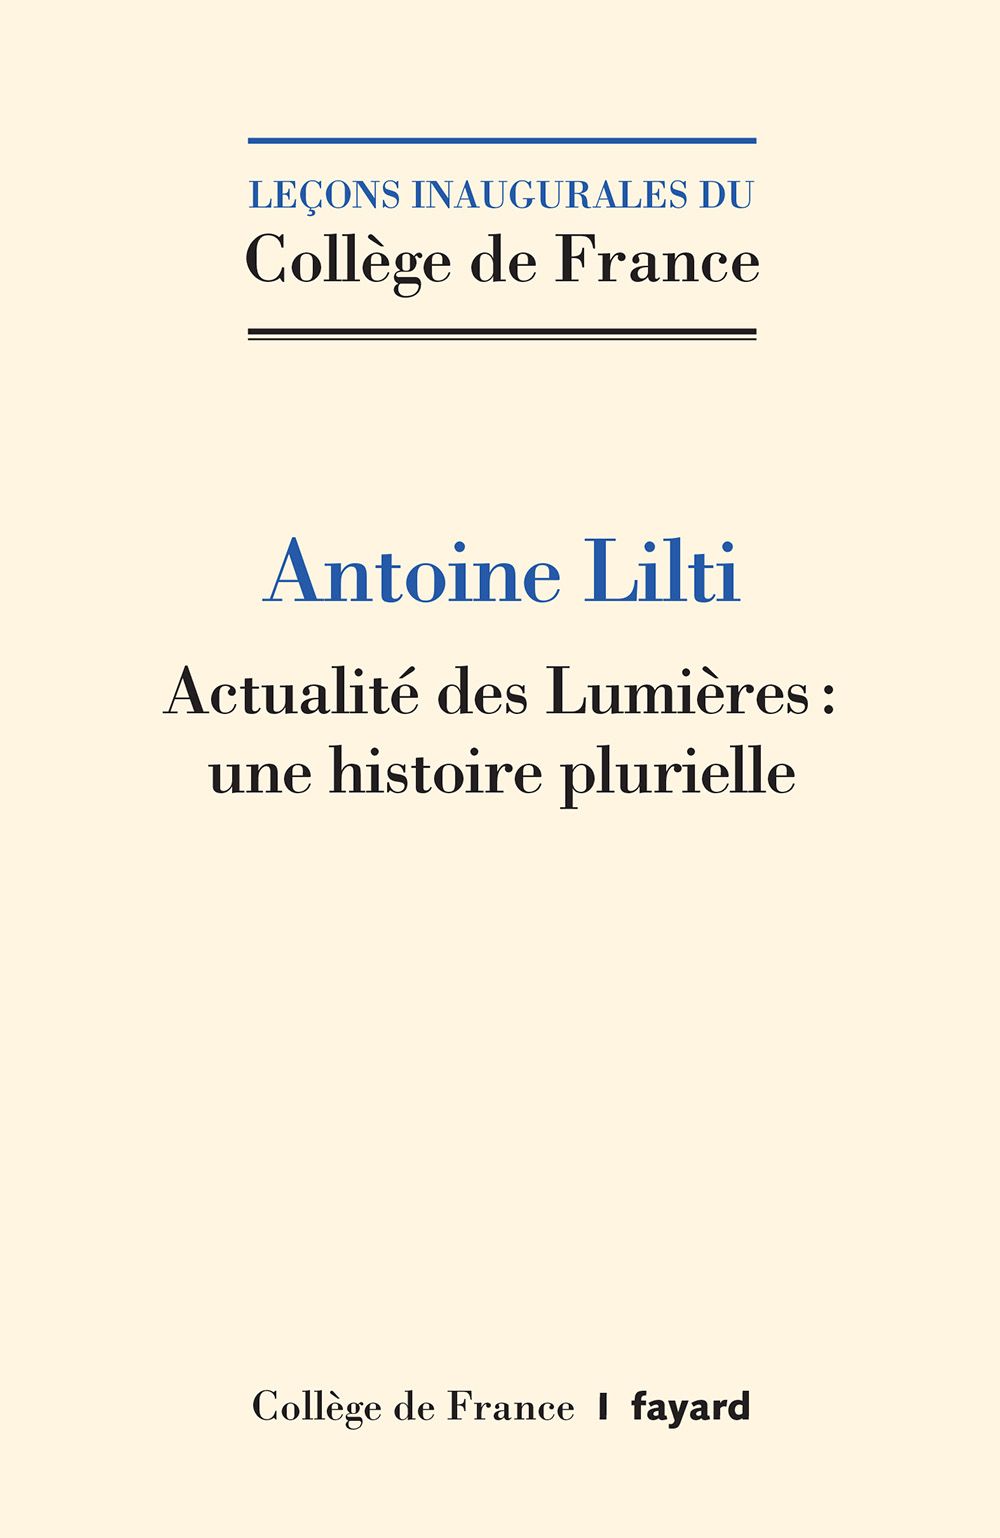 Antoine Lilti, Actualité des Lumières : une histoire plurielle